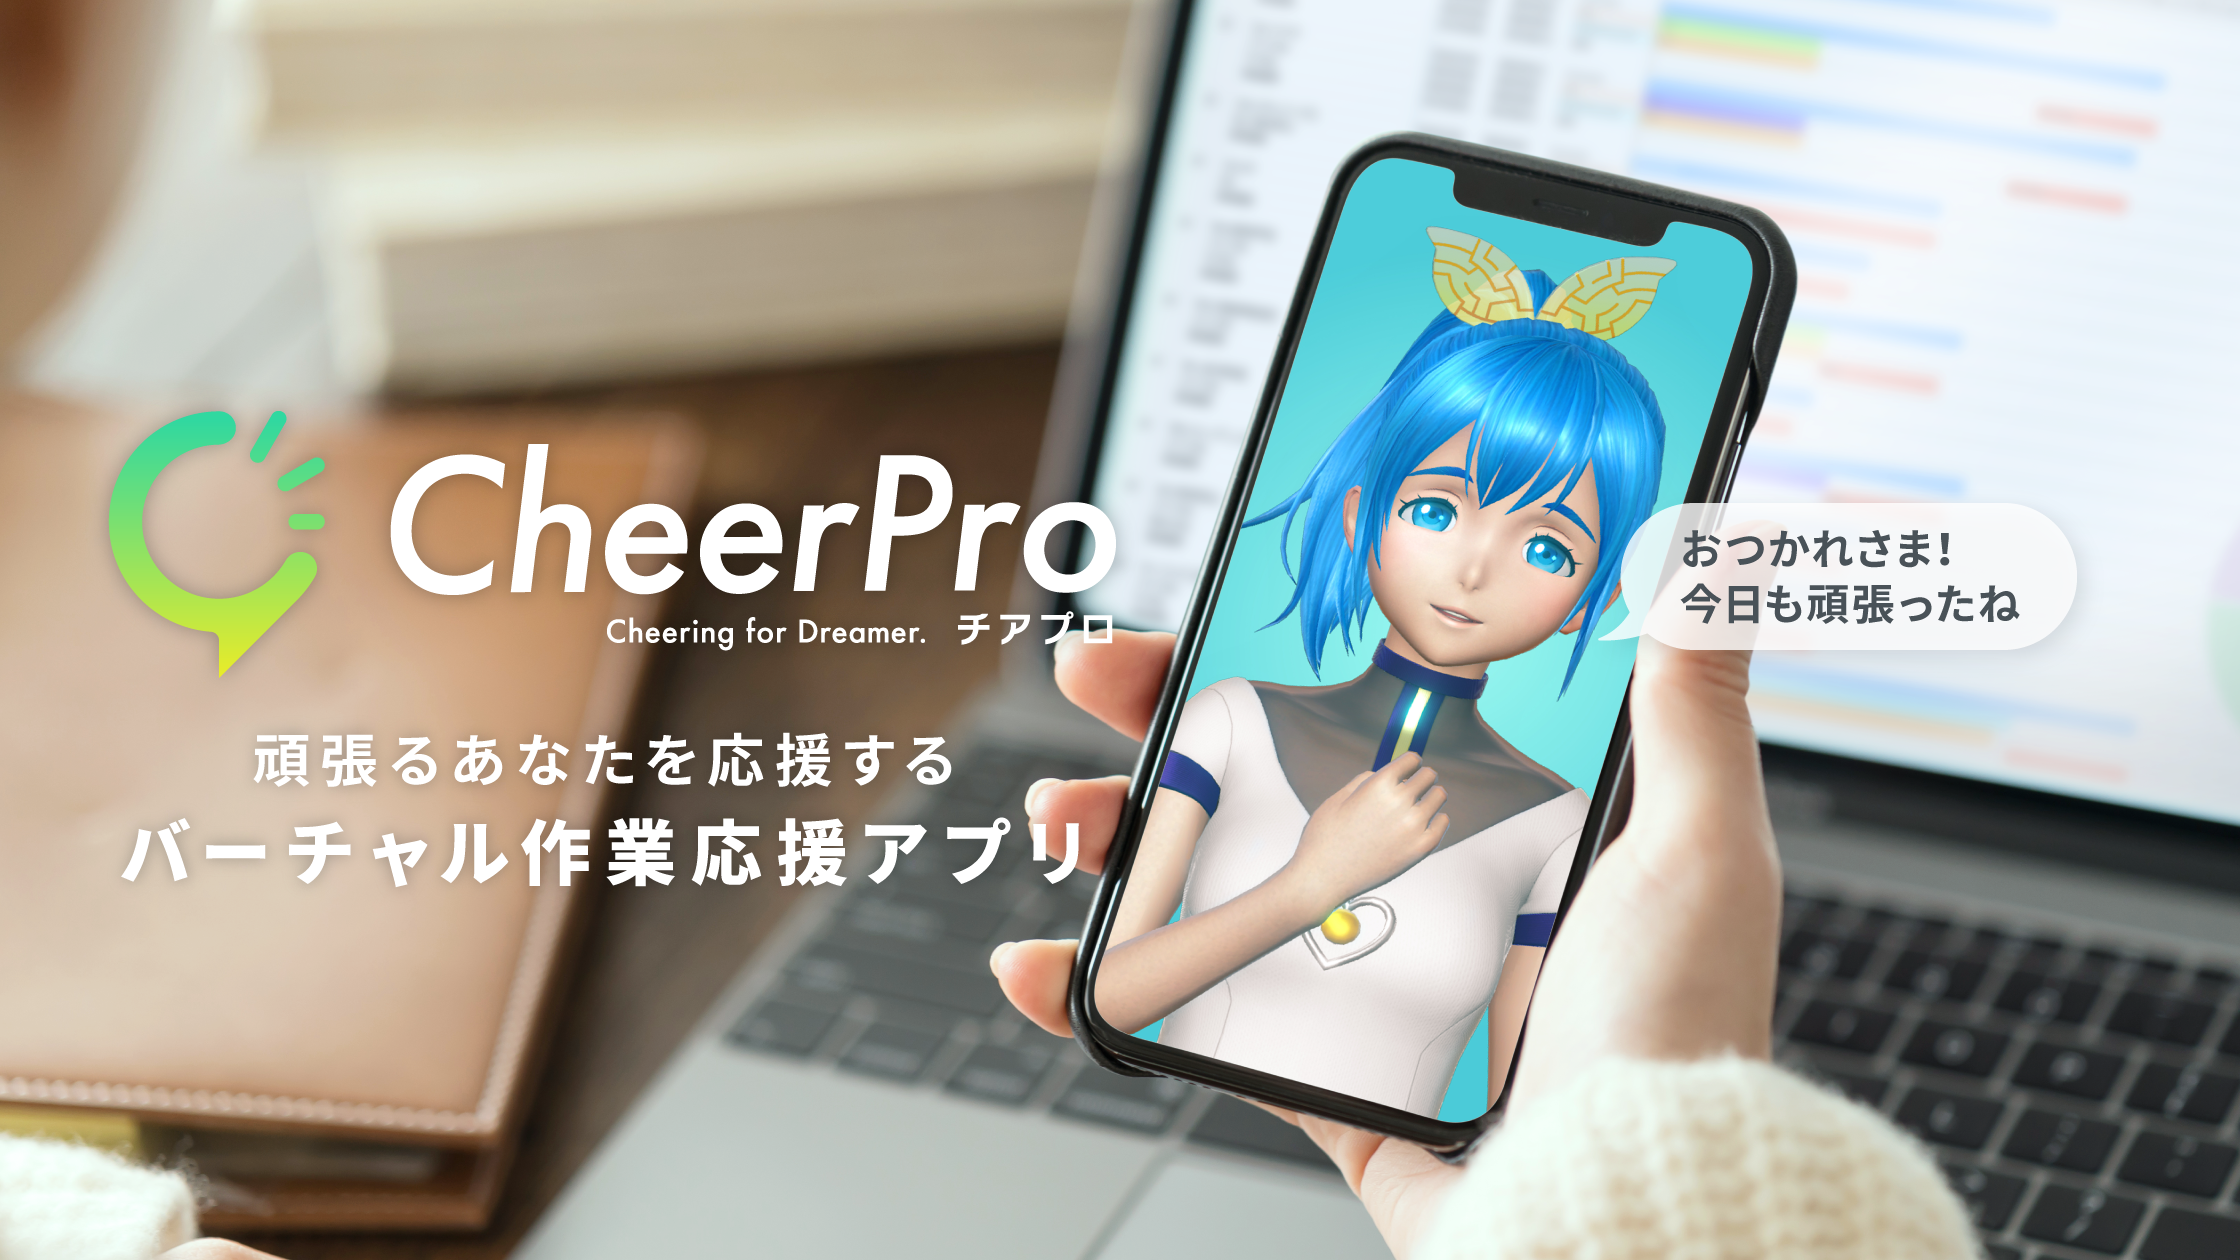 Gatebox、キャラクターが作業を応援してくれるバーチャル作業応援アプリ「CheerPro」を発表、2022年リリース予定のサブ画像1